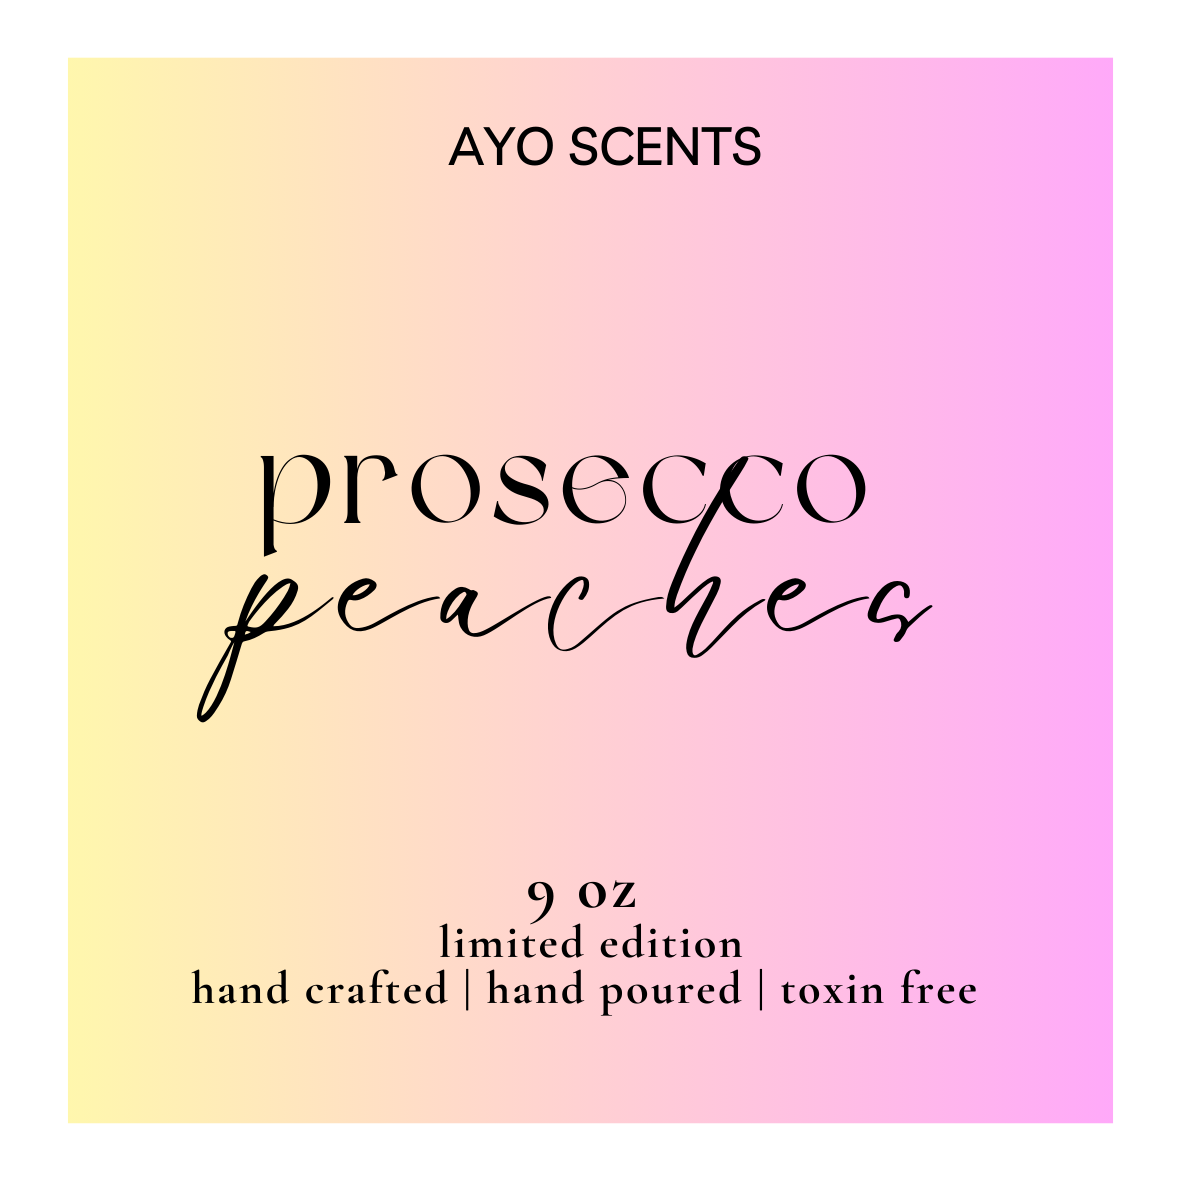 Prosecco & Peaches